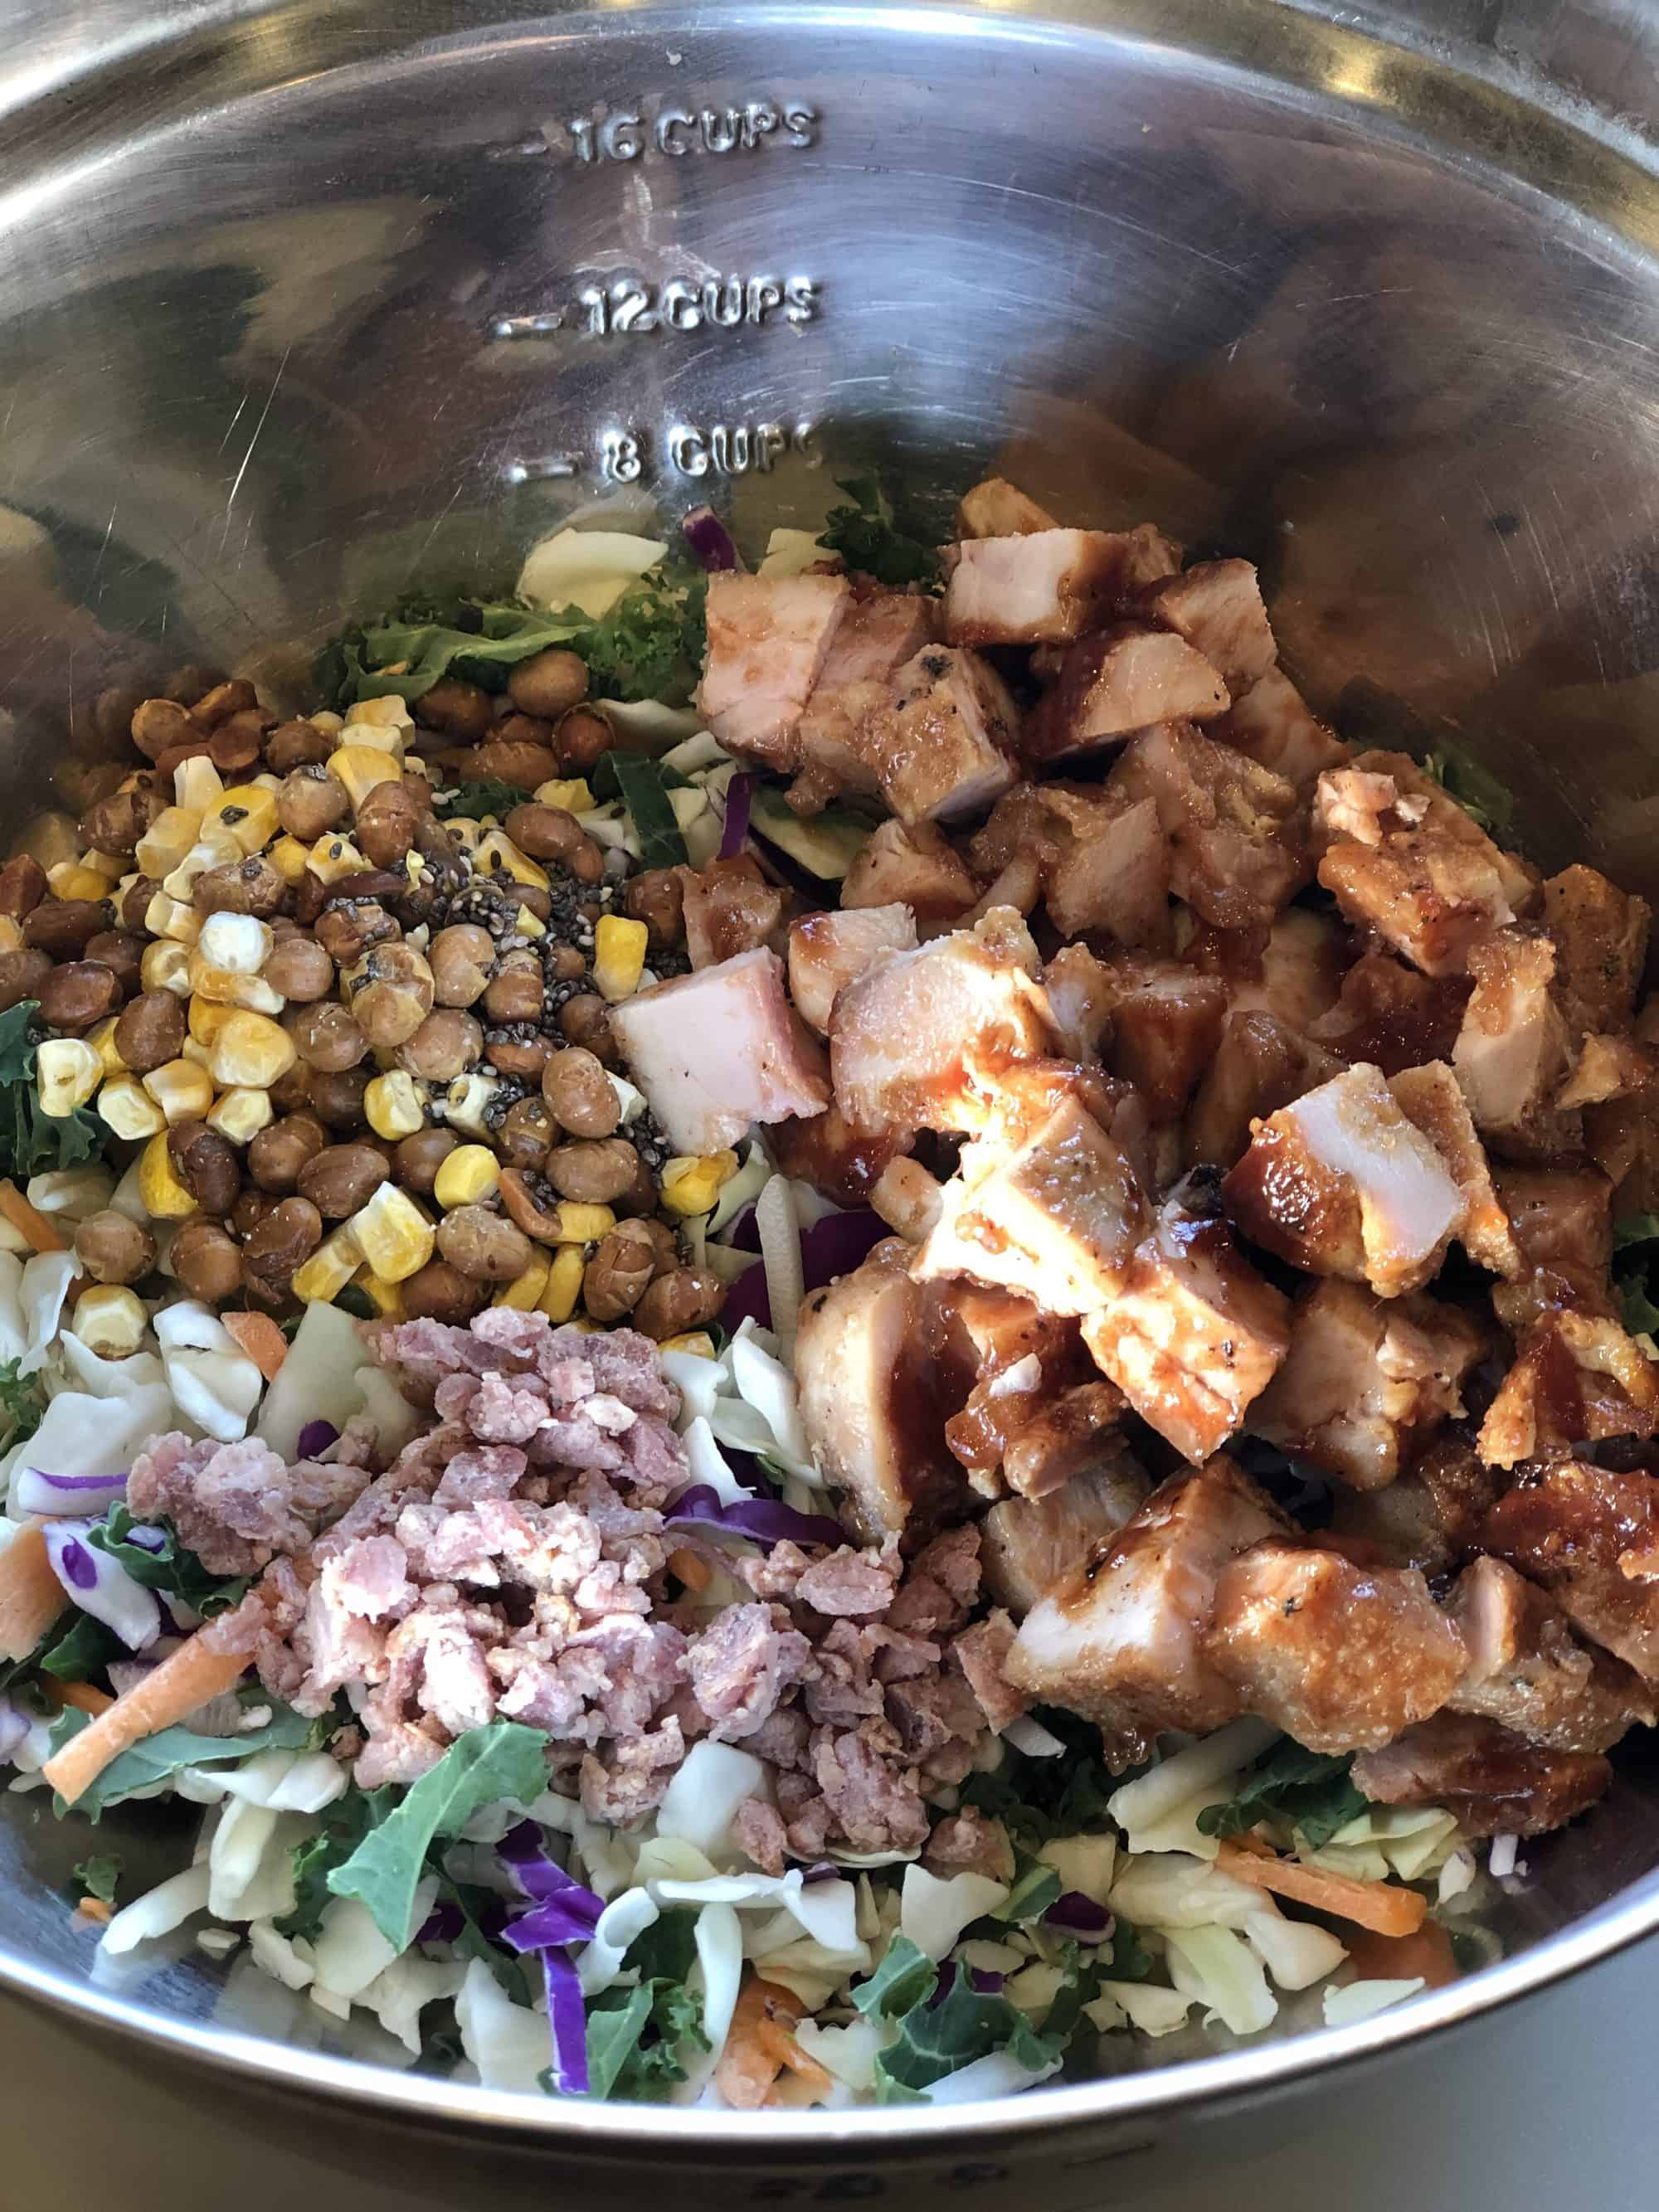 BBQ Chicken Salad Wrap ingredients in bowl